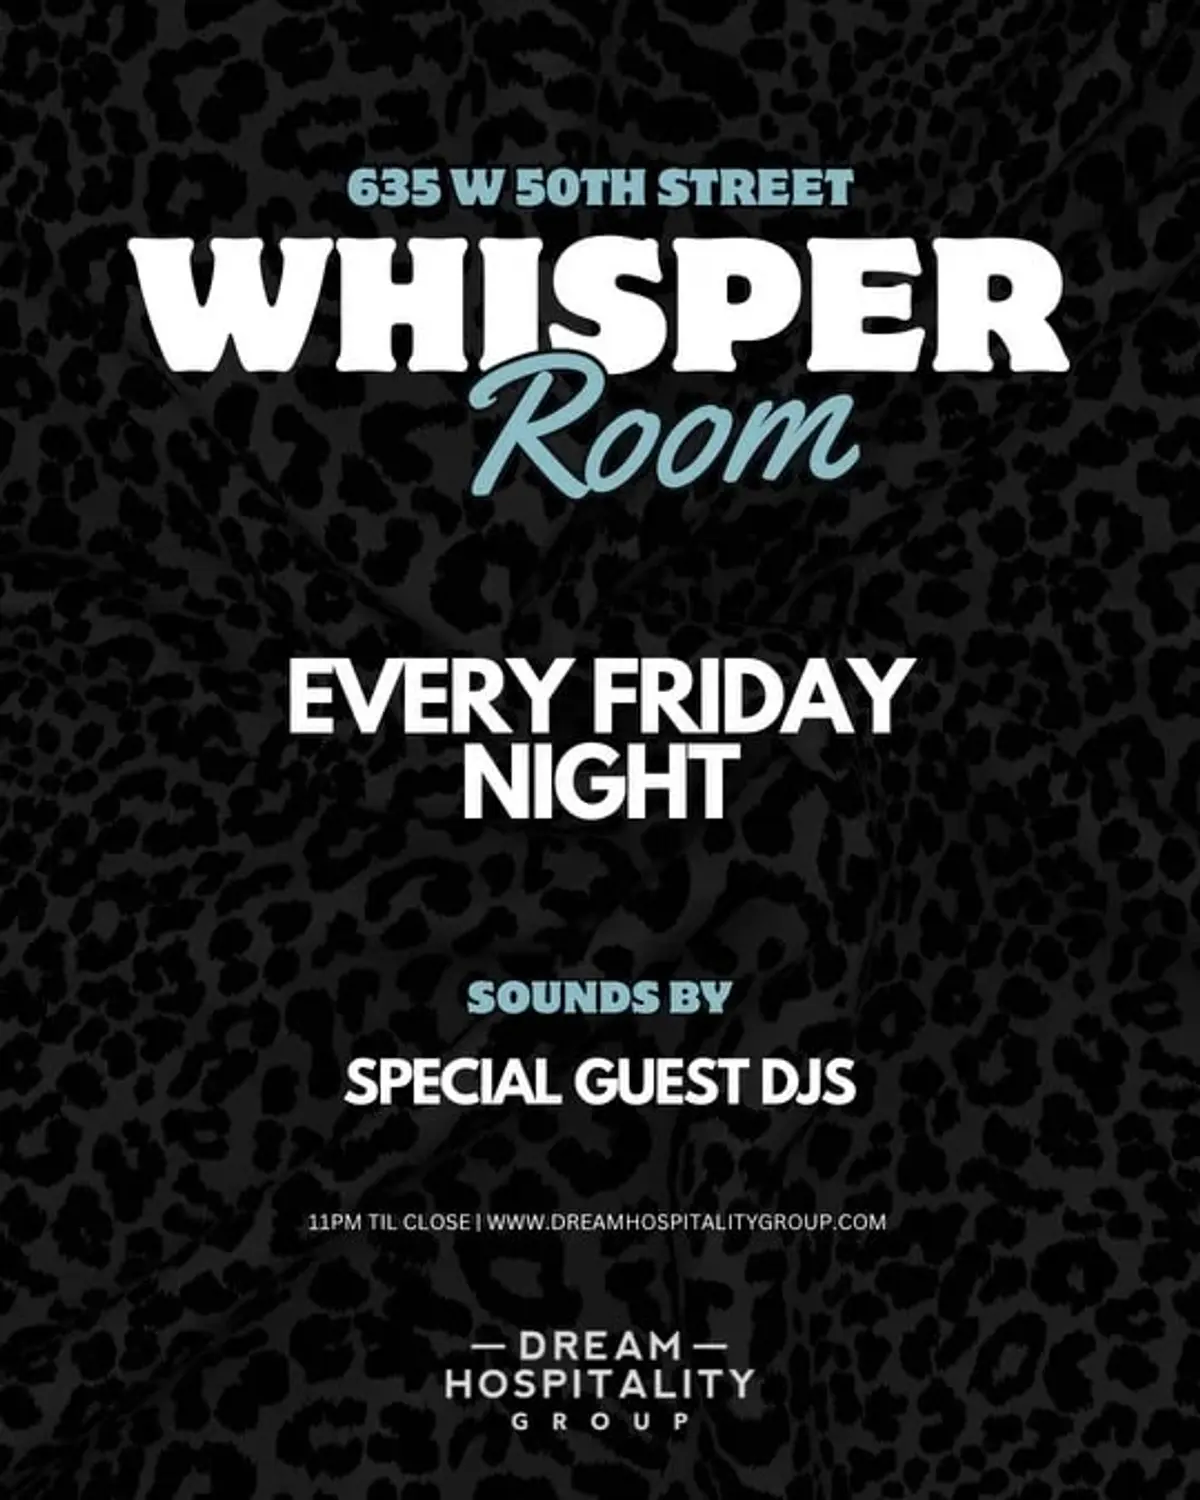 FRIDAY NIGHTS @ WHISPER ROOM